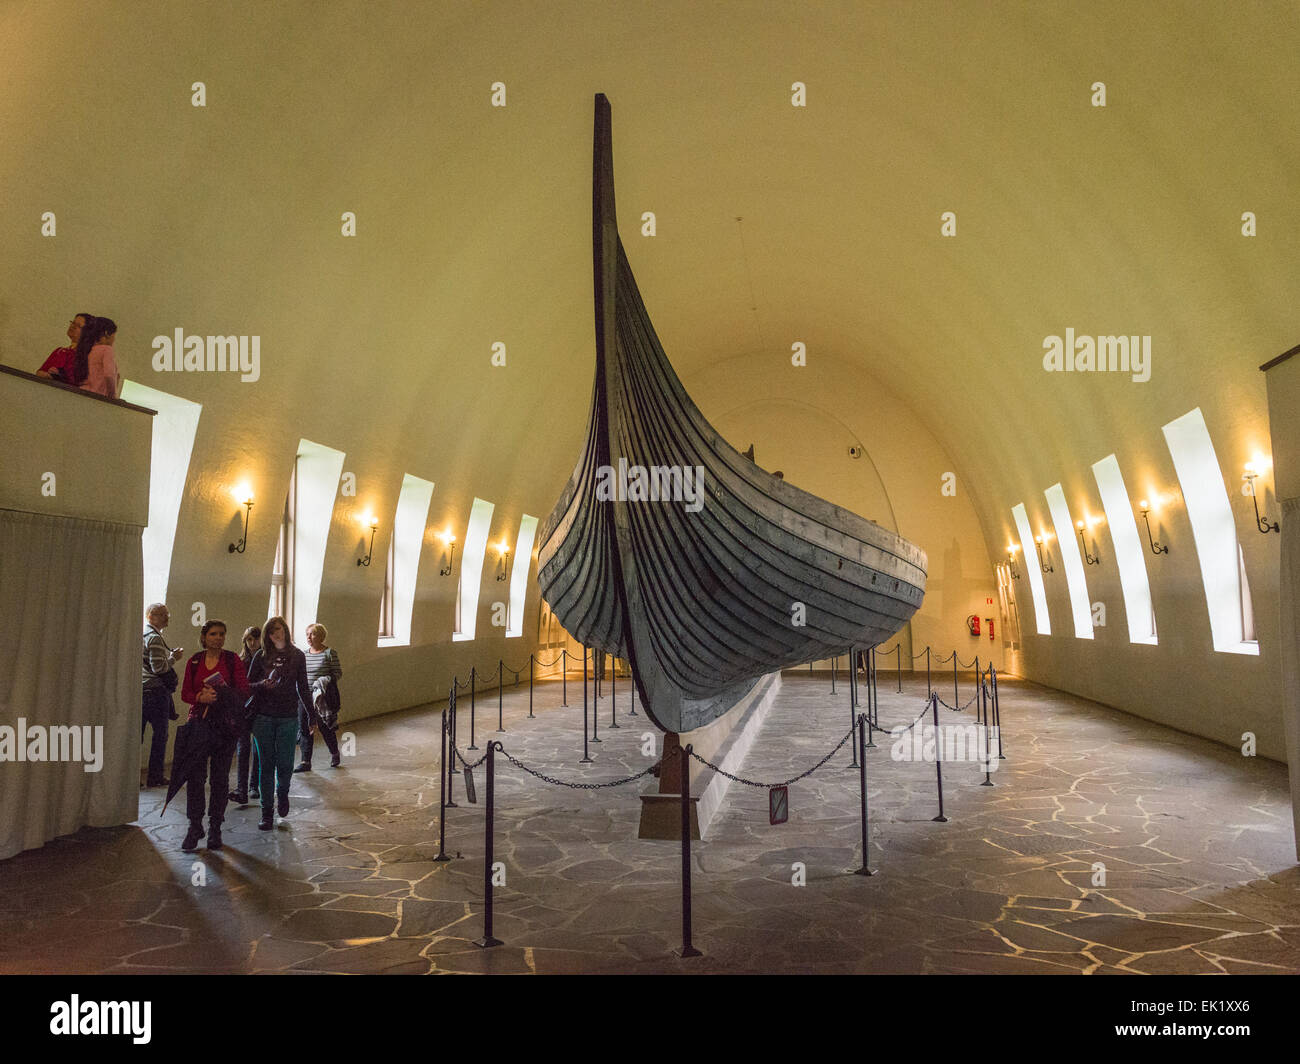 Navire de Gokstad au Viking Ship Museum, Bygdøy, Oslo, Norvège. Banque D'Images